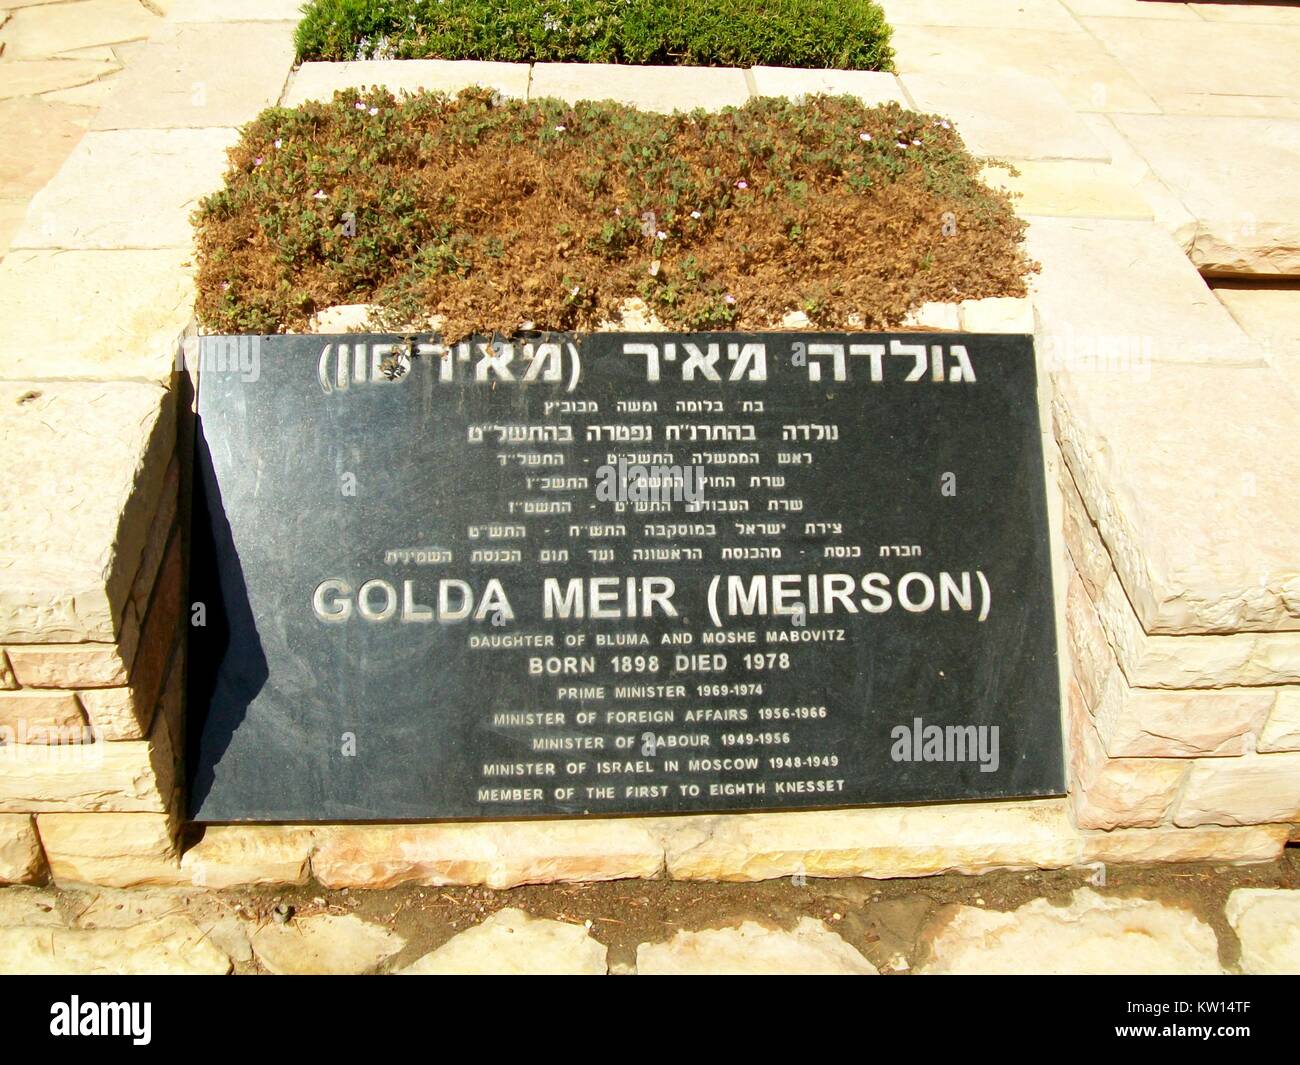 Close up de grave de l'ancien Premier Ministre israélien Golda Meir (Meirson), au mont Herzl cemetary, Jérusalem, Israël, 2012. Banque D'Images